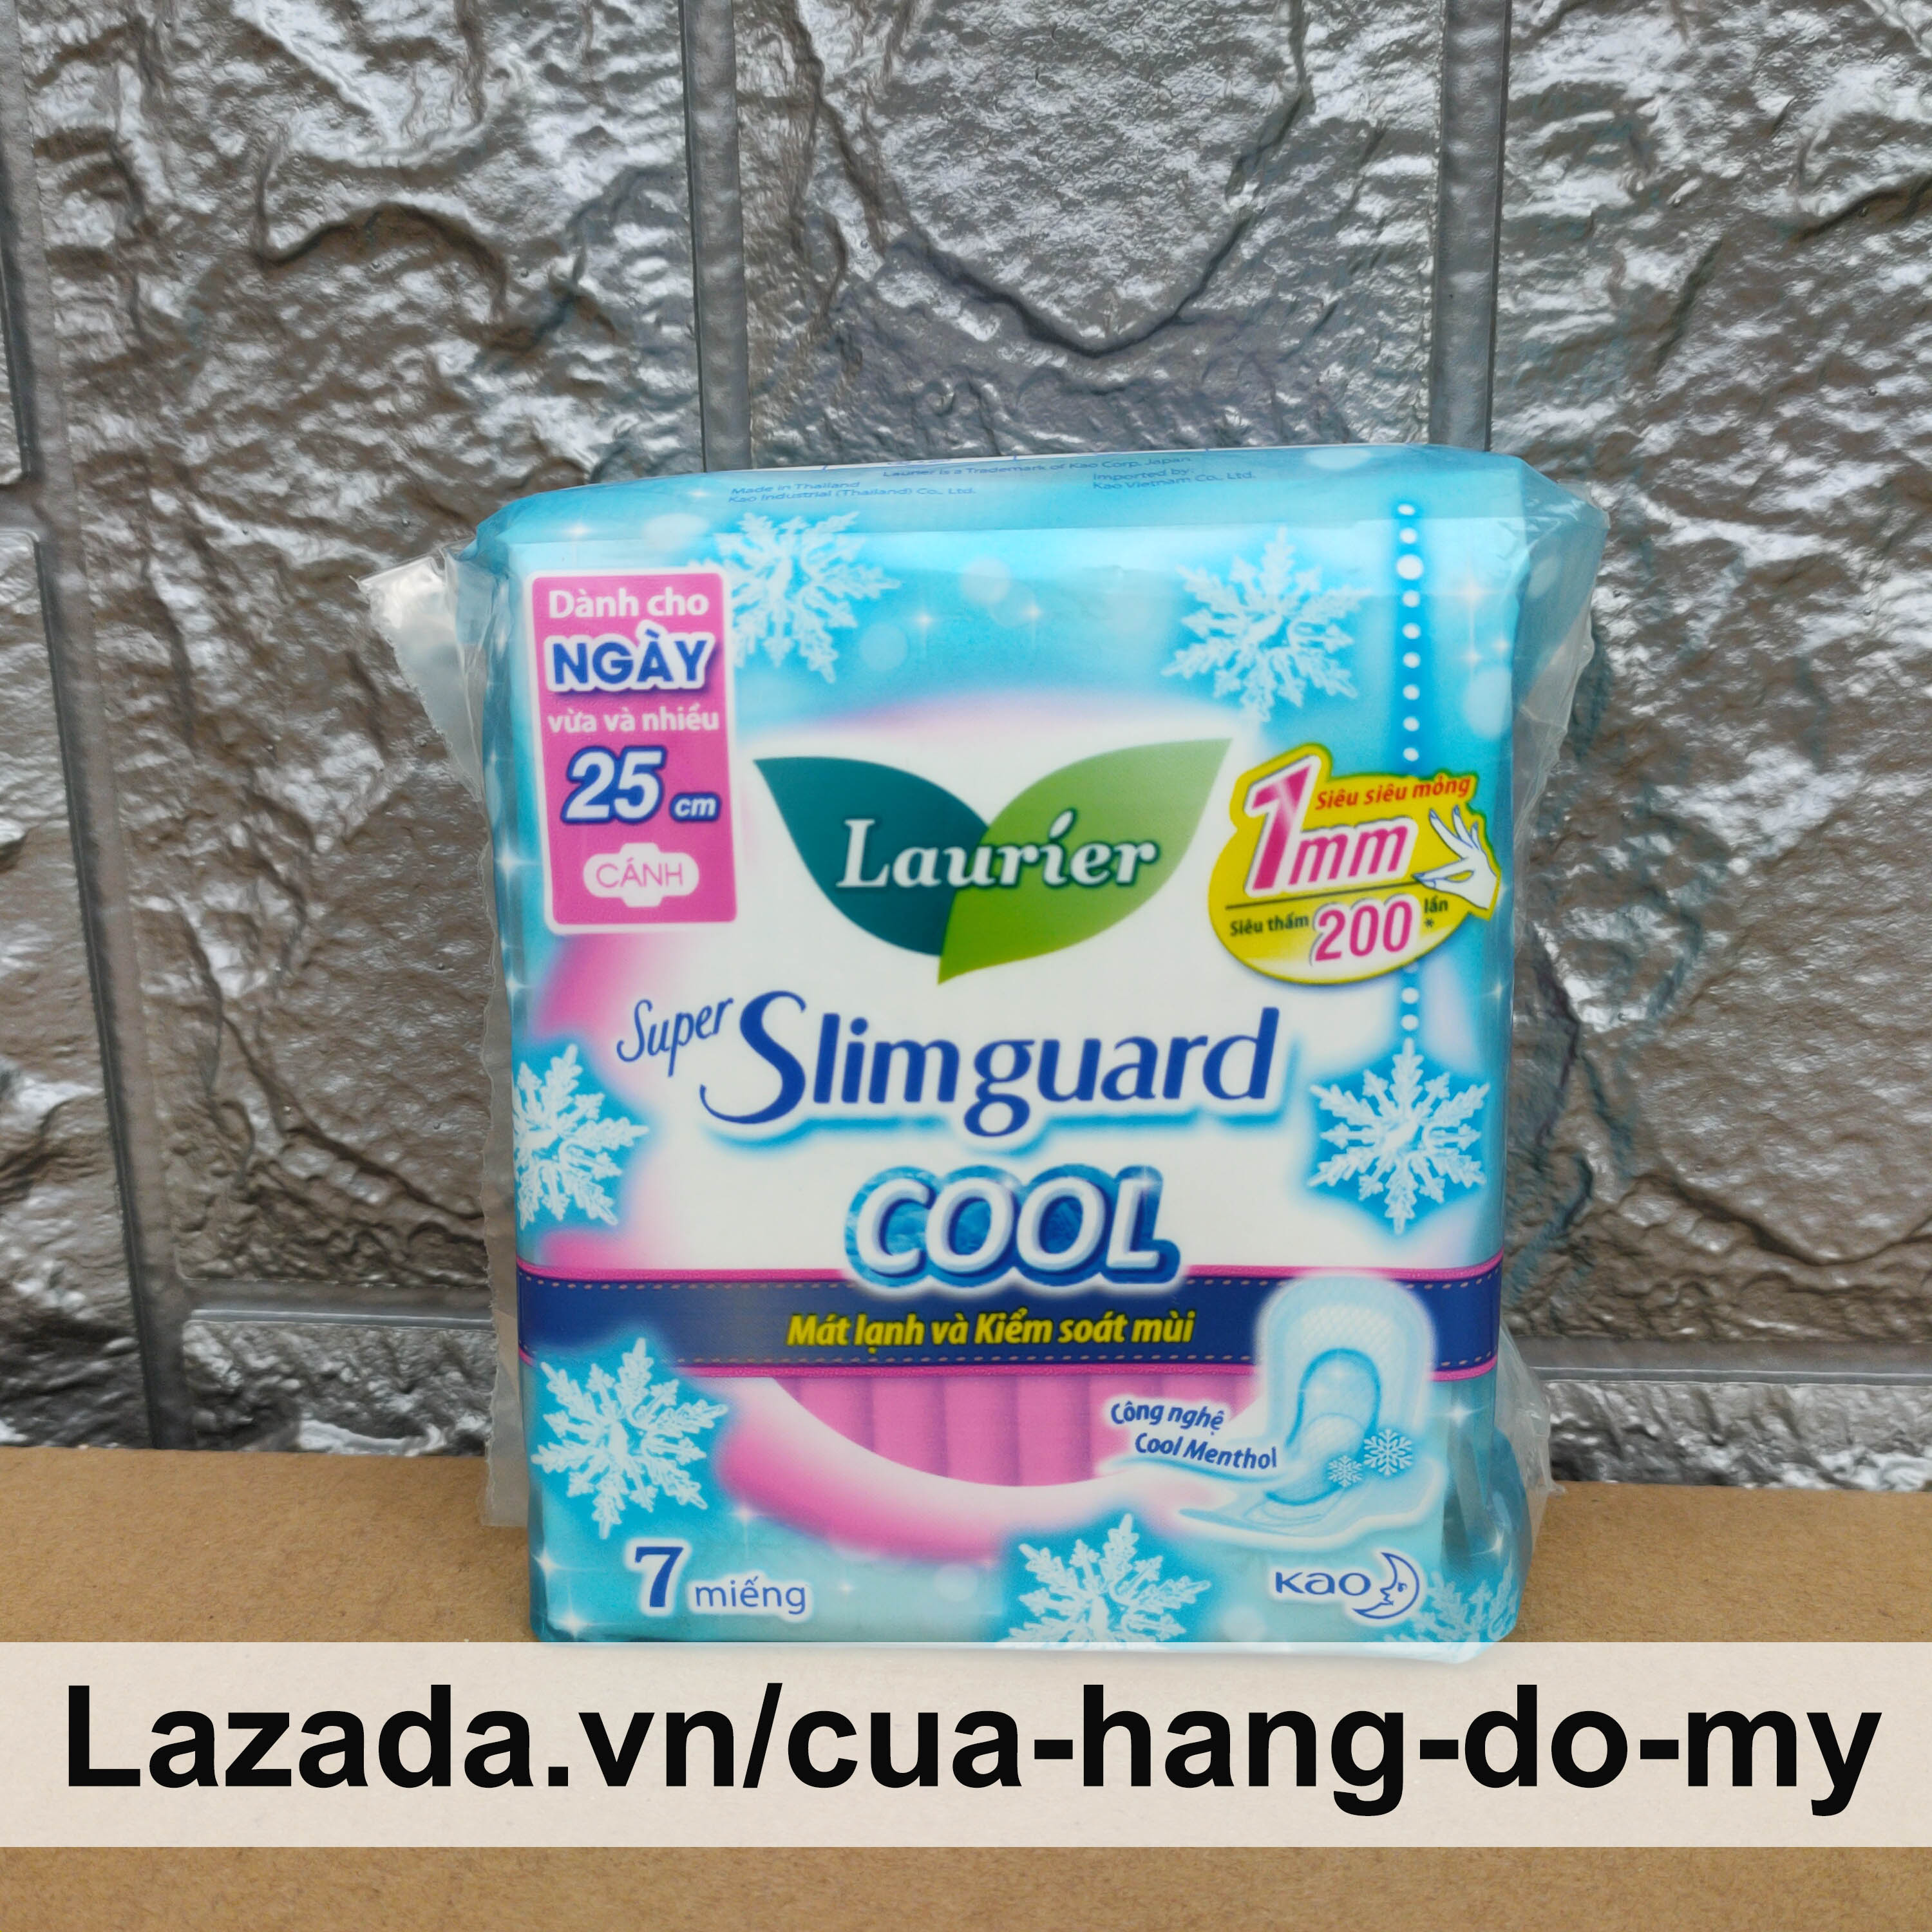 Băng Vệ Sinh LAURIER Siêu mỏng BẢO VỆ 1MM Super Slimguard Cool 25cm có cánh gói 7 miếng dành cho ngày vừa và nhiều - mát lạnh và kiểm soát mùi - Cửa Hàng Đồ Mỹ